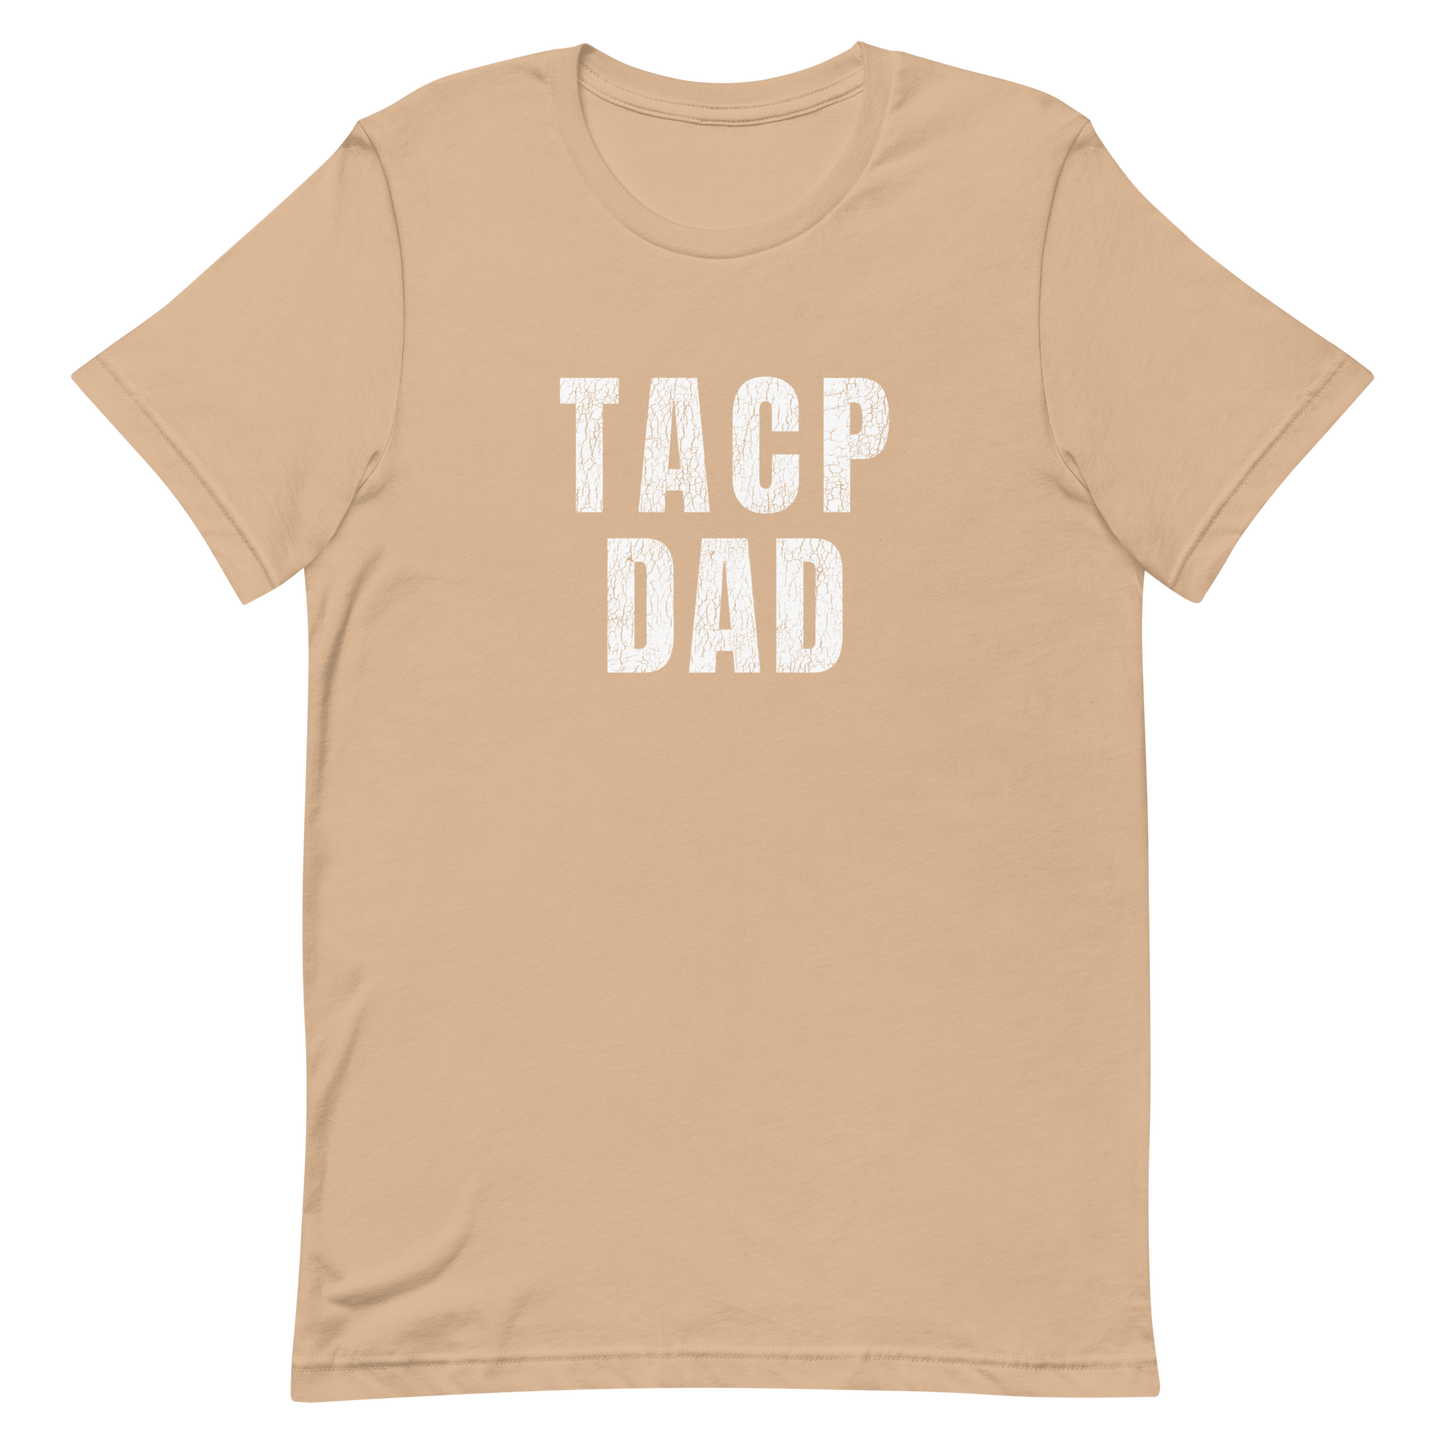 TACP Dad Tee